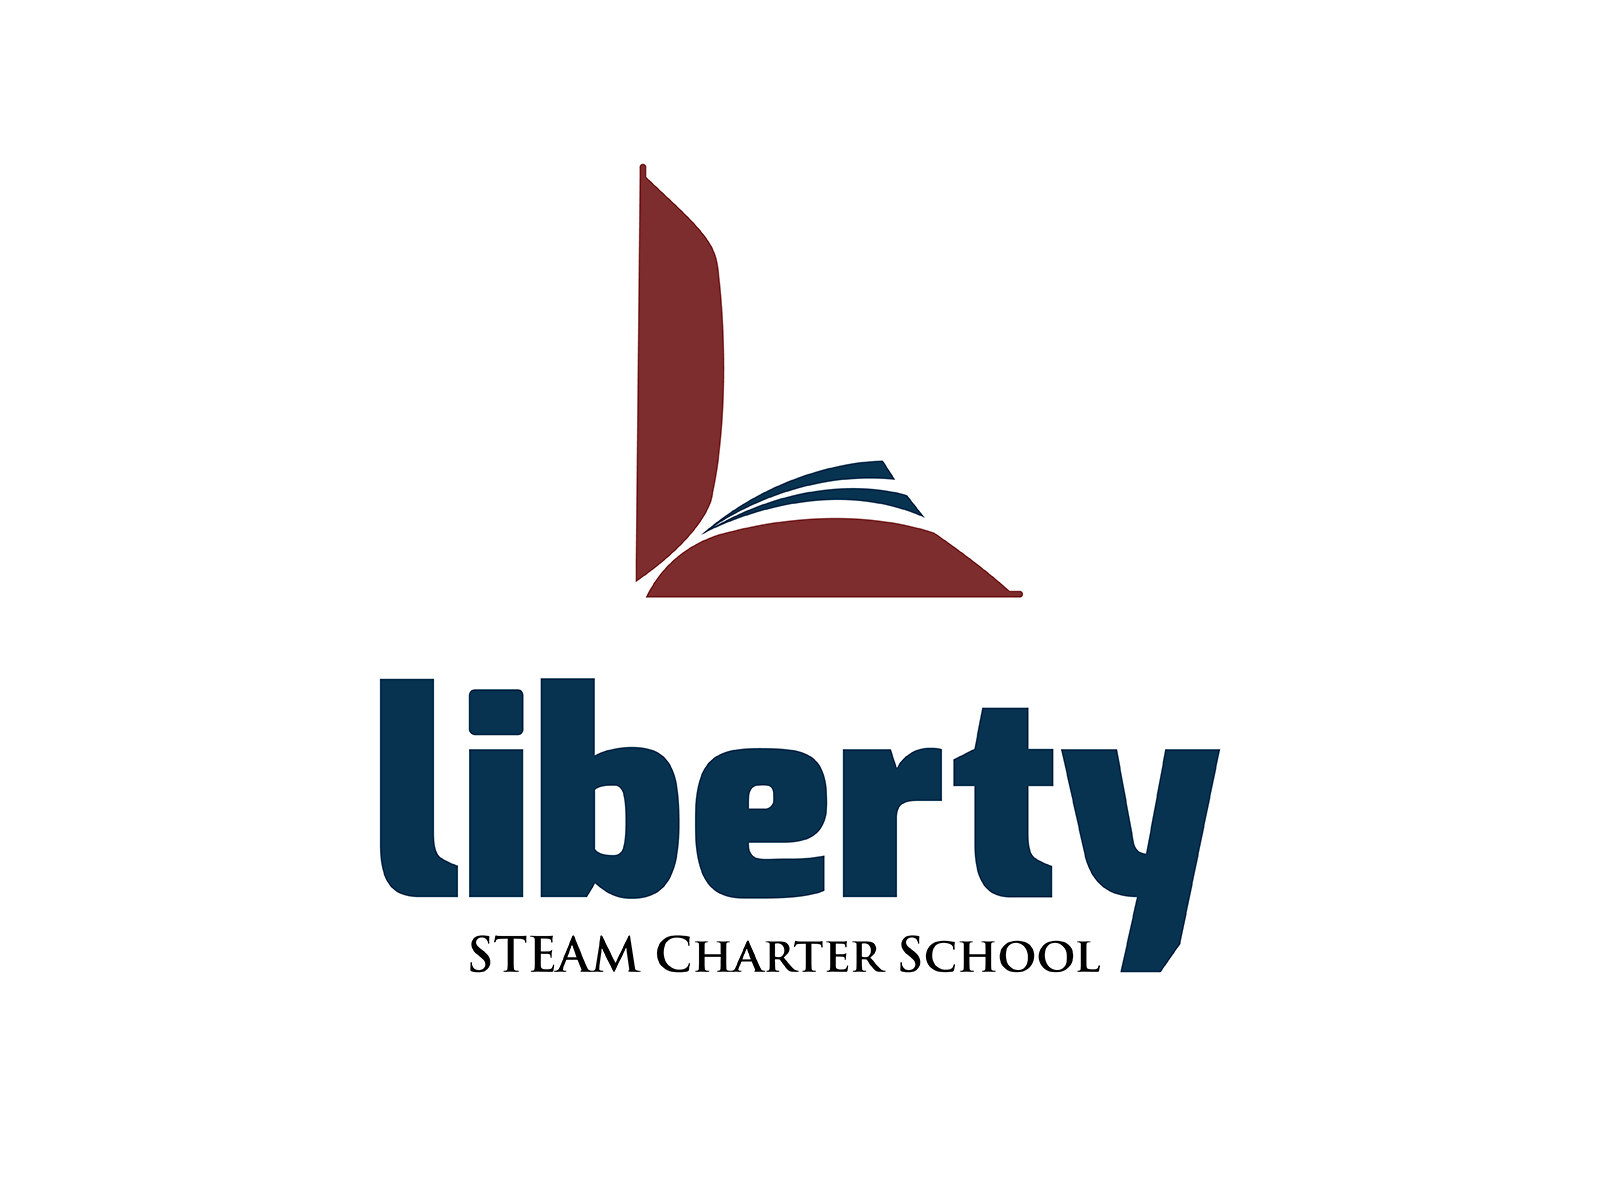 charter logo